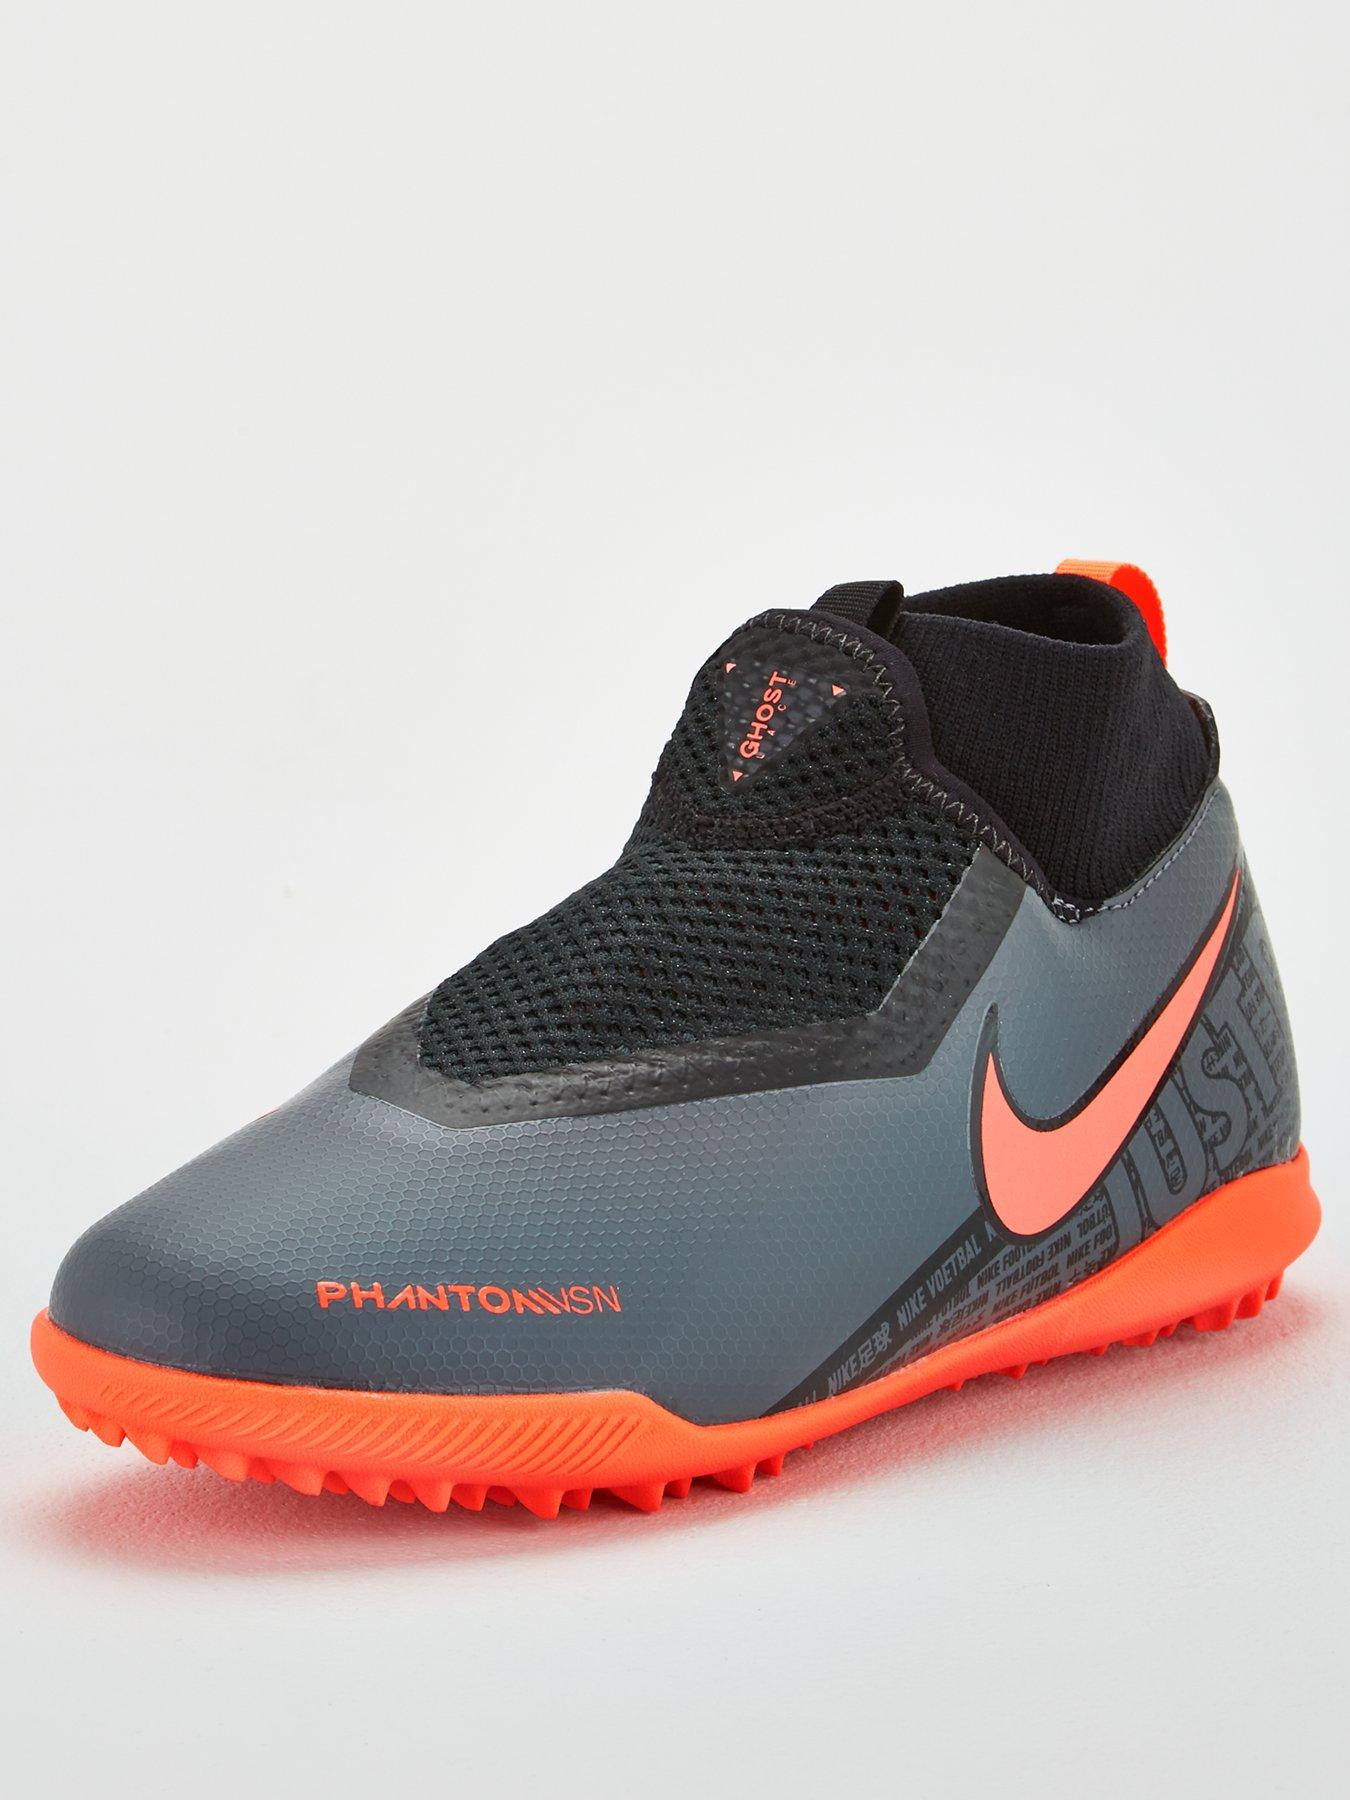 Nike Phantom Vision Gato X Hallenschuhe eBay